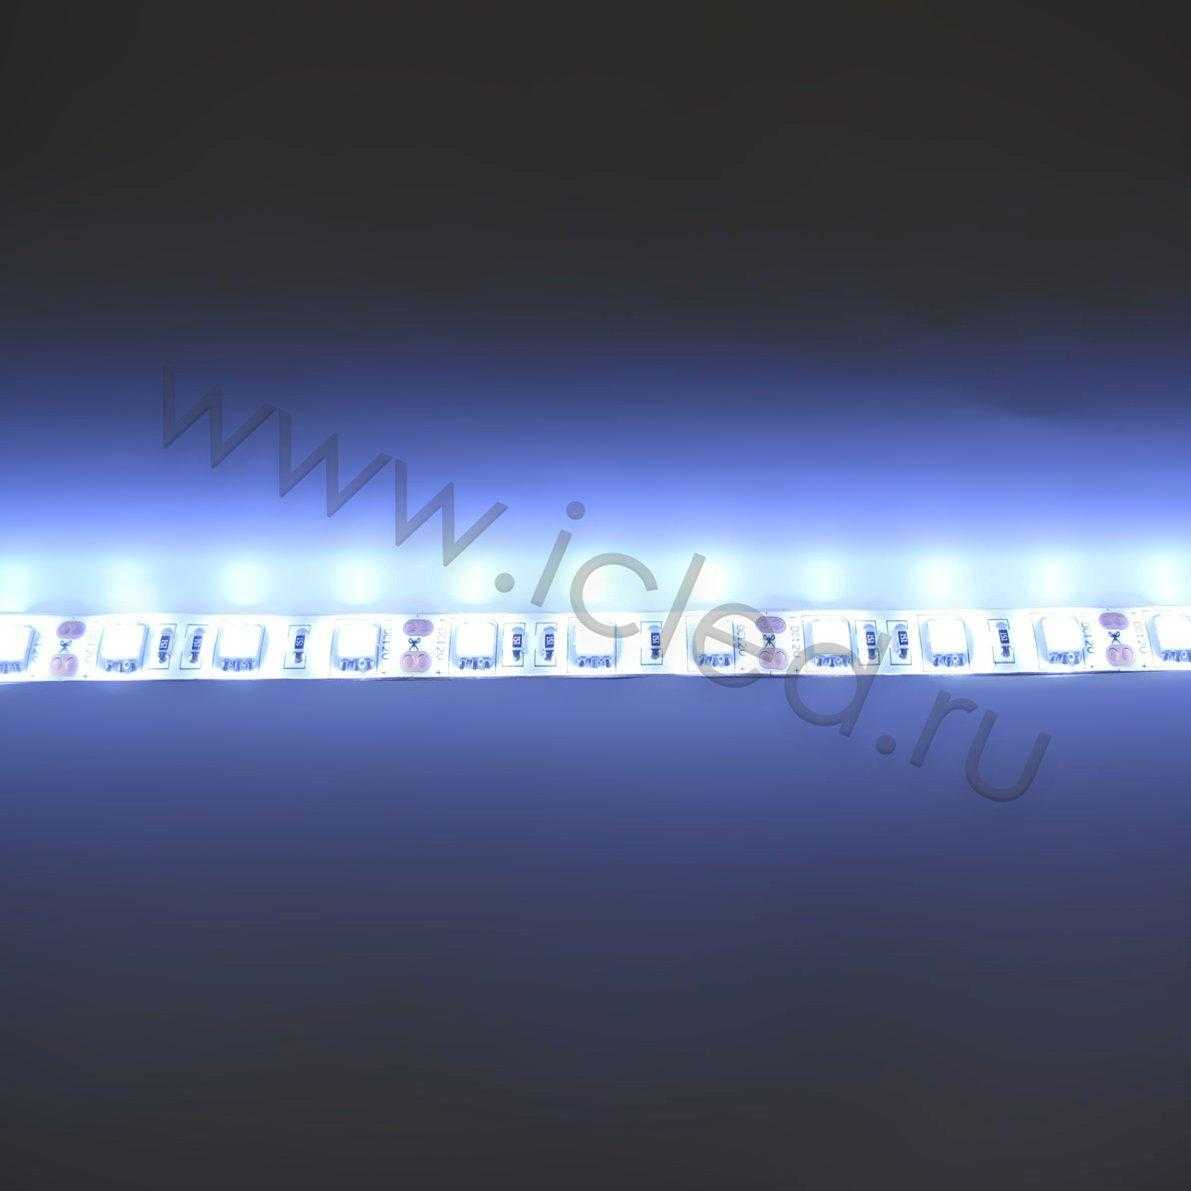 Влагозащищенные светодиодные ленты Светодиодная лента Standart class, 5050, 60led/m, White, 12V, IP65 Icled